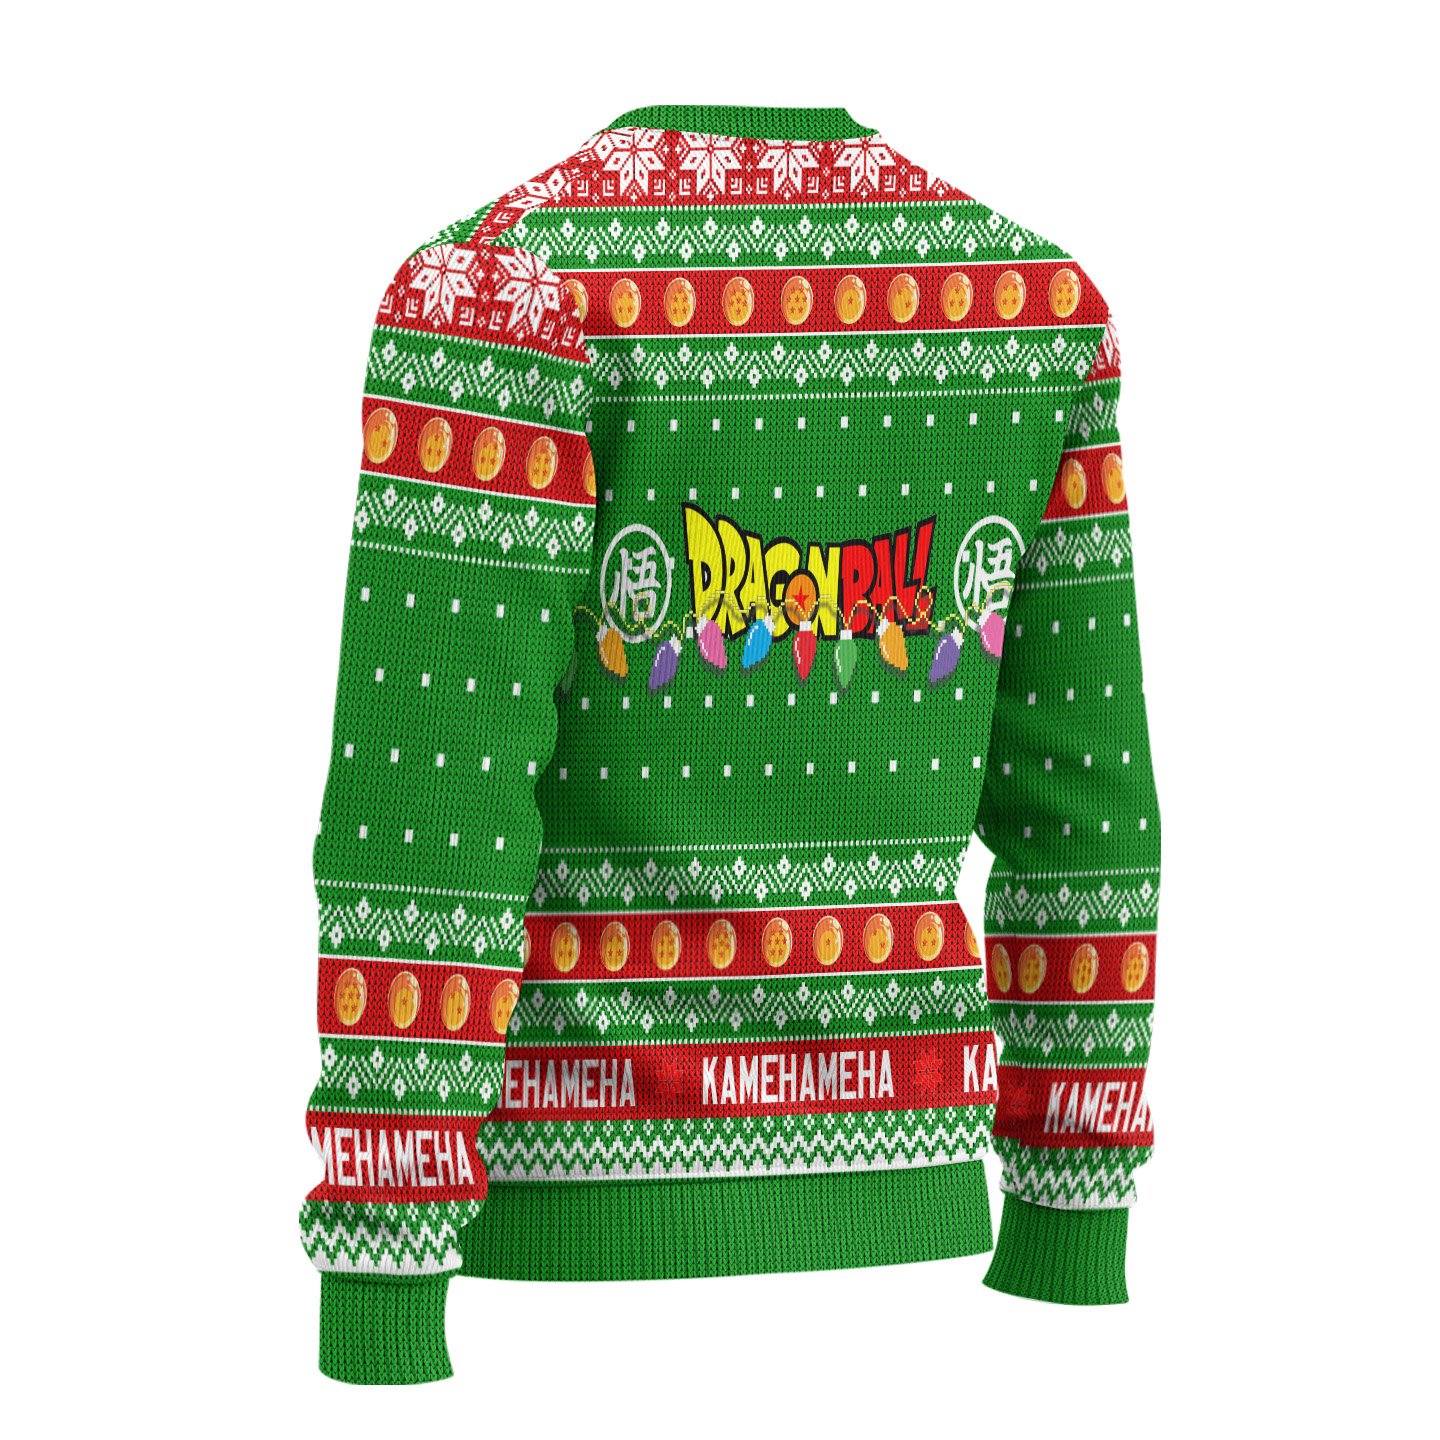 Goku Family Dragon Ball Anime Green Christmas Sweater Xmas Gift